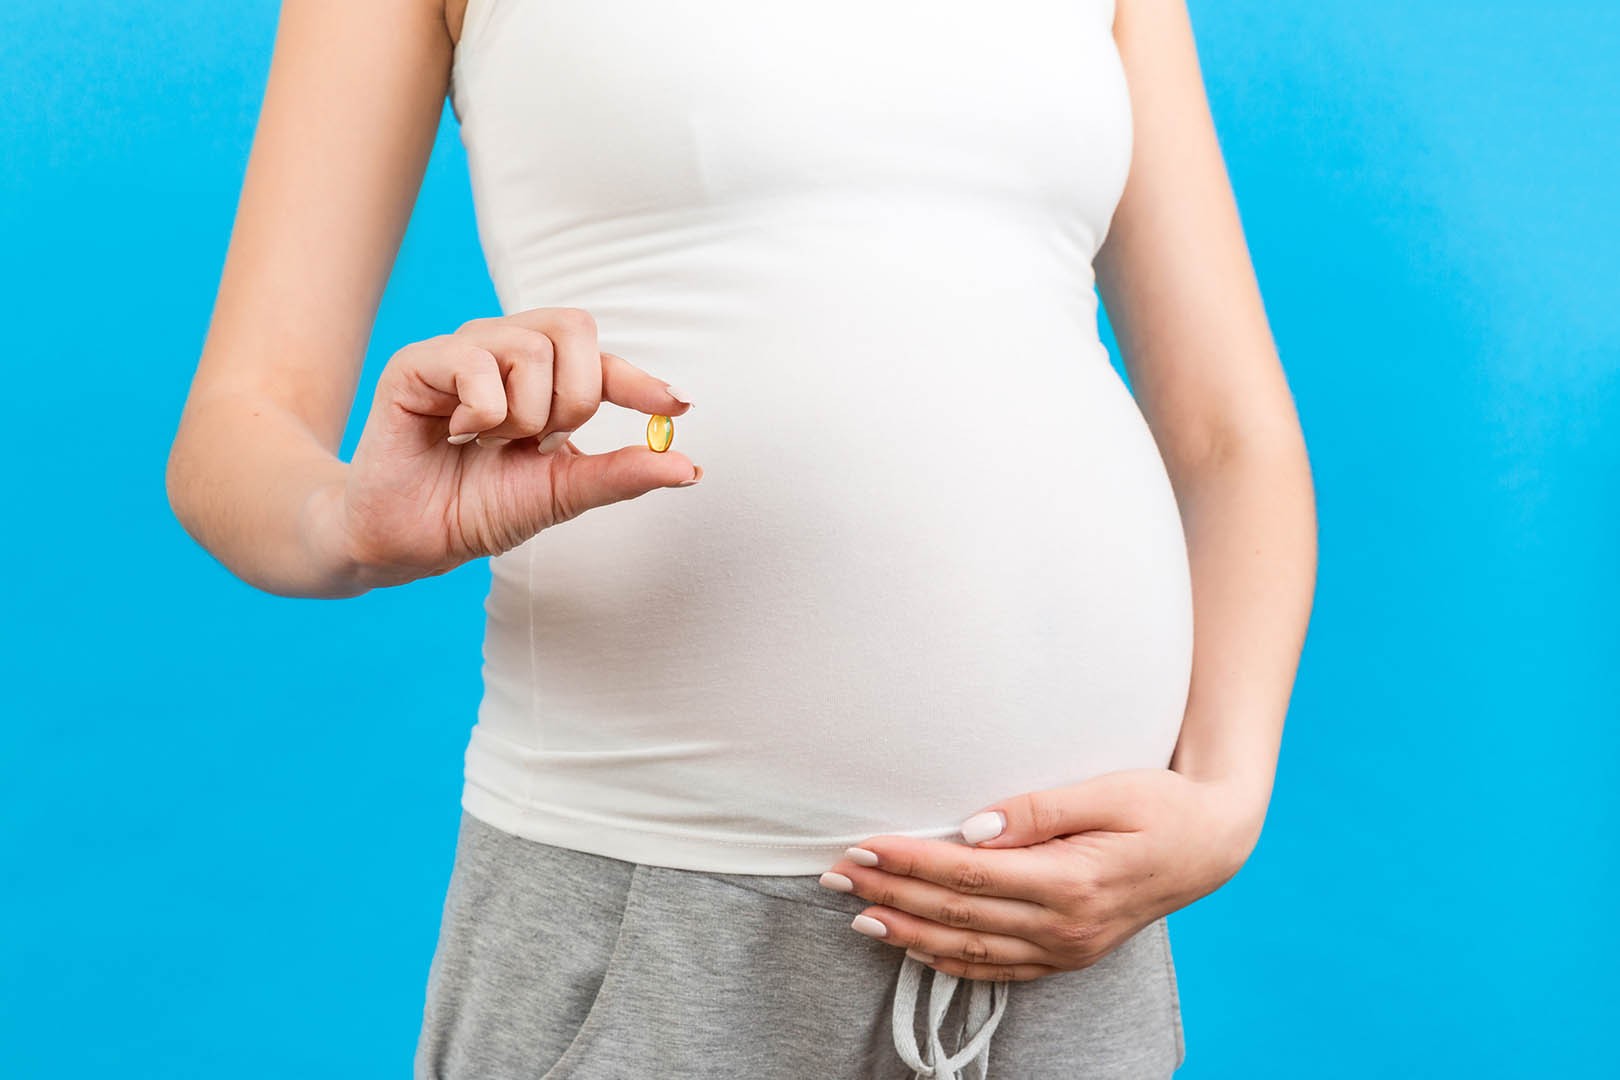 Vitaminas durante el embarazo